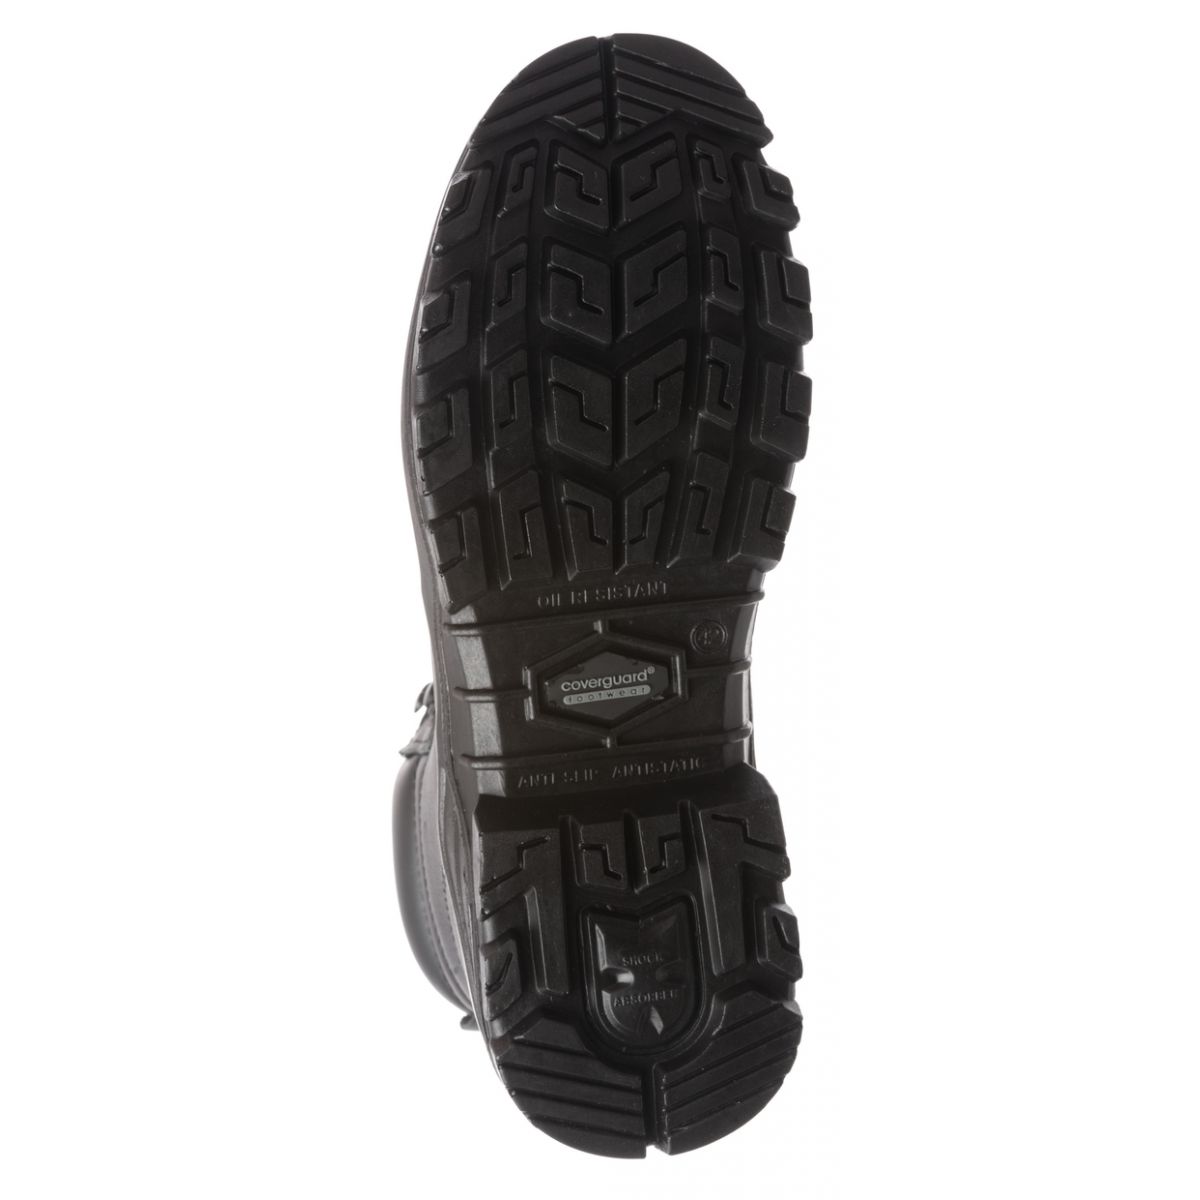 Chaussure de sécurité AVENTURINE S3 haute noir composite - COVERGUARD - Taille 39 1